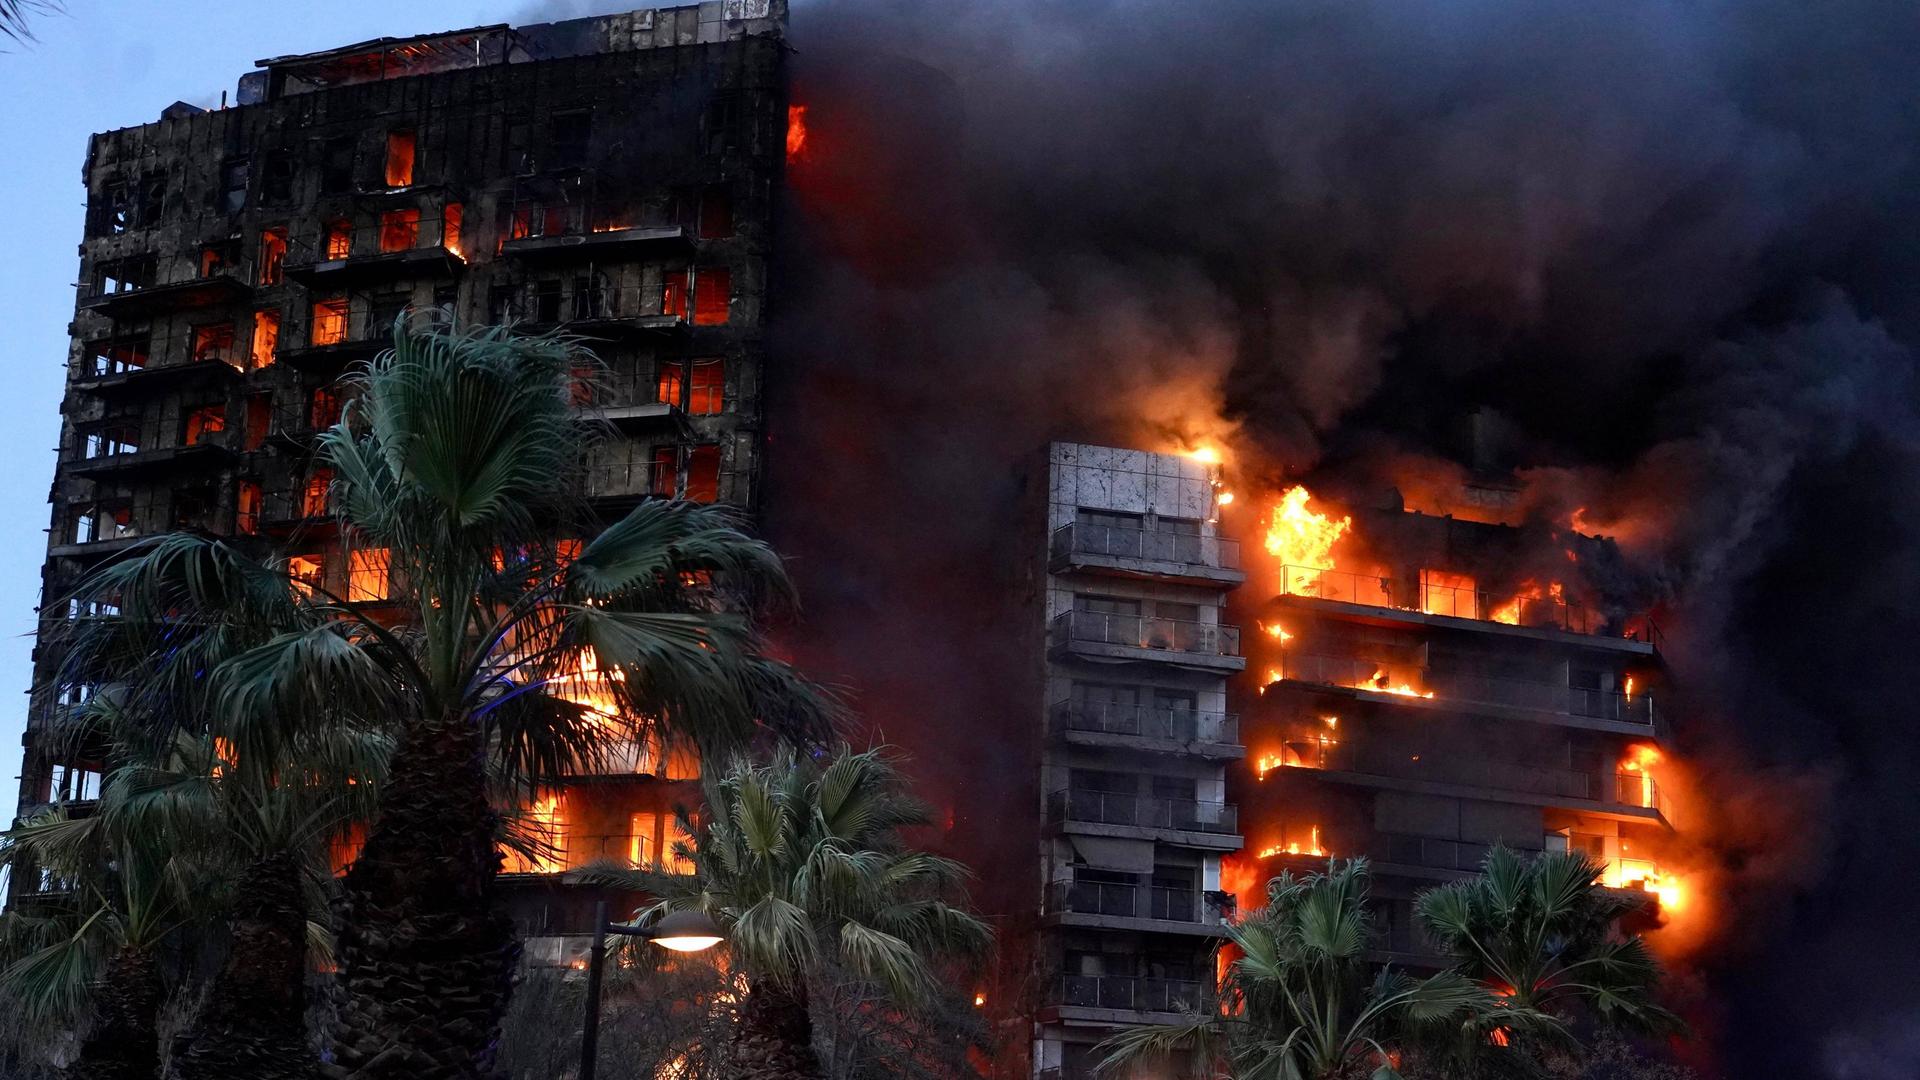 Valencia - Vier Todesopfer und zahlreiche Verletzte bei Großbrand in Hochhaus - besonders brennbares Material verbaut